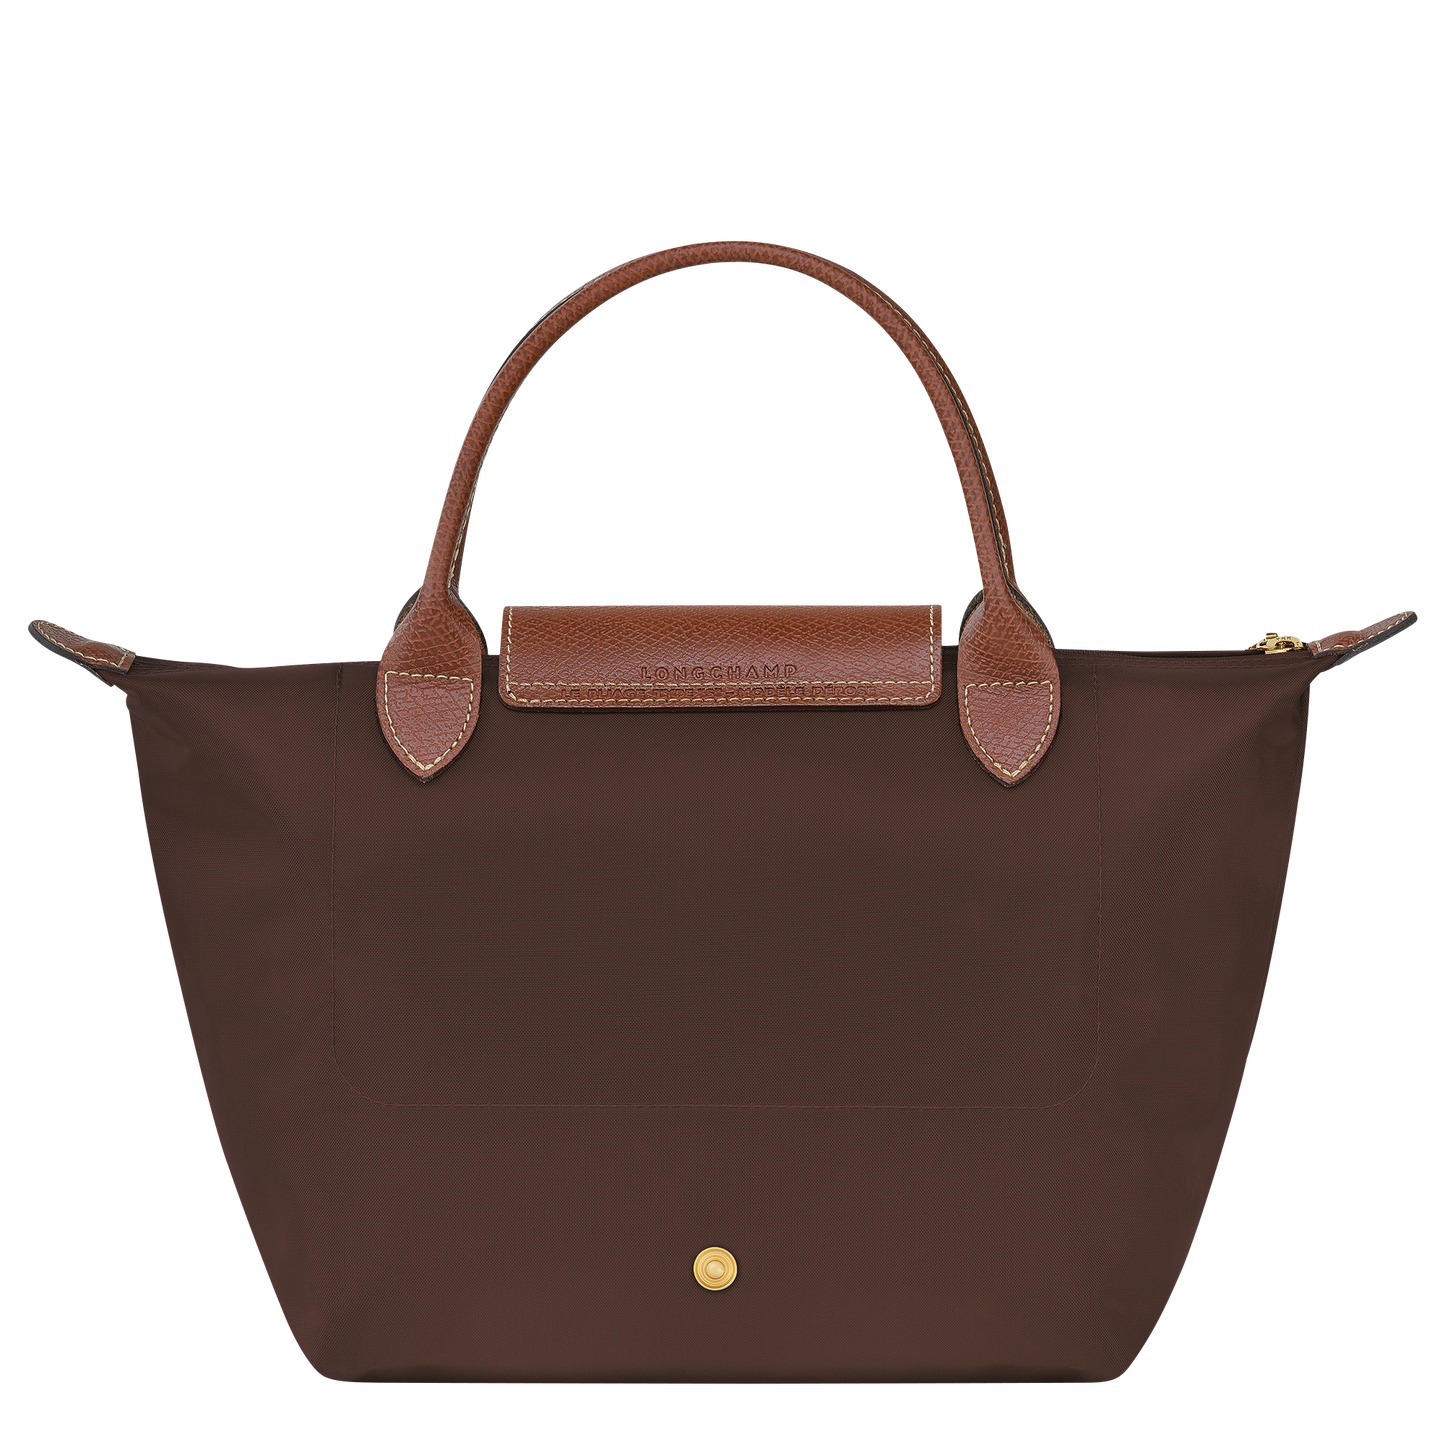 Le Pliage Original Handbag S